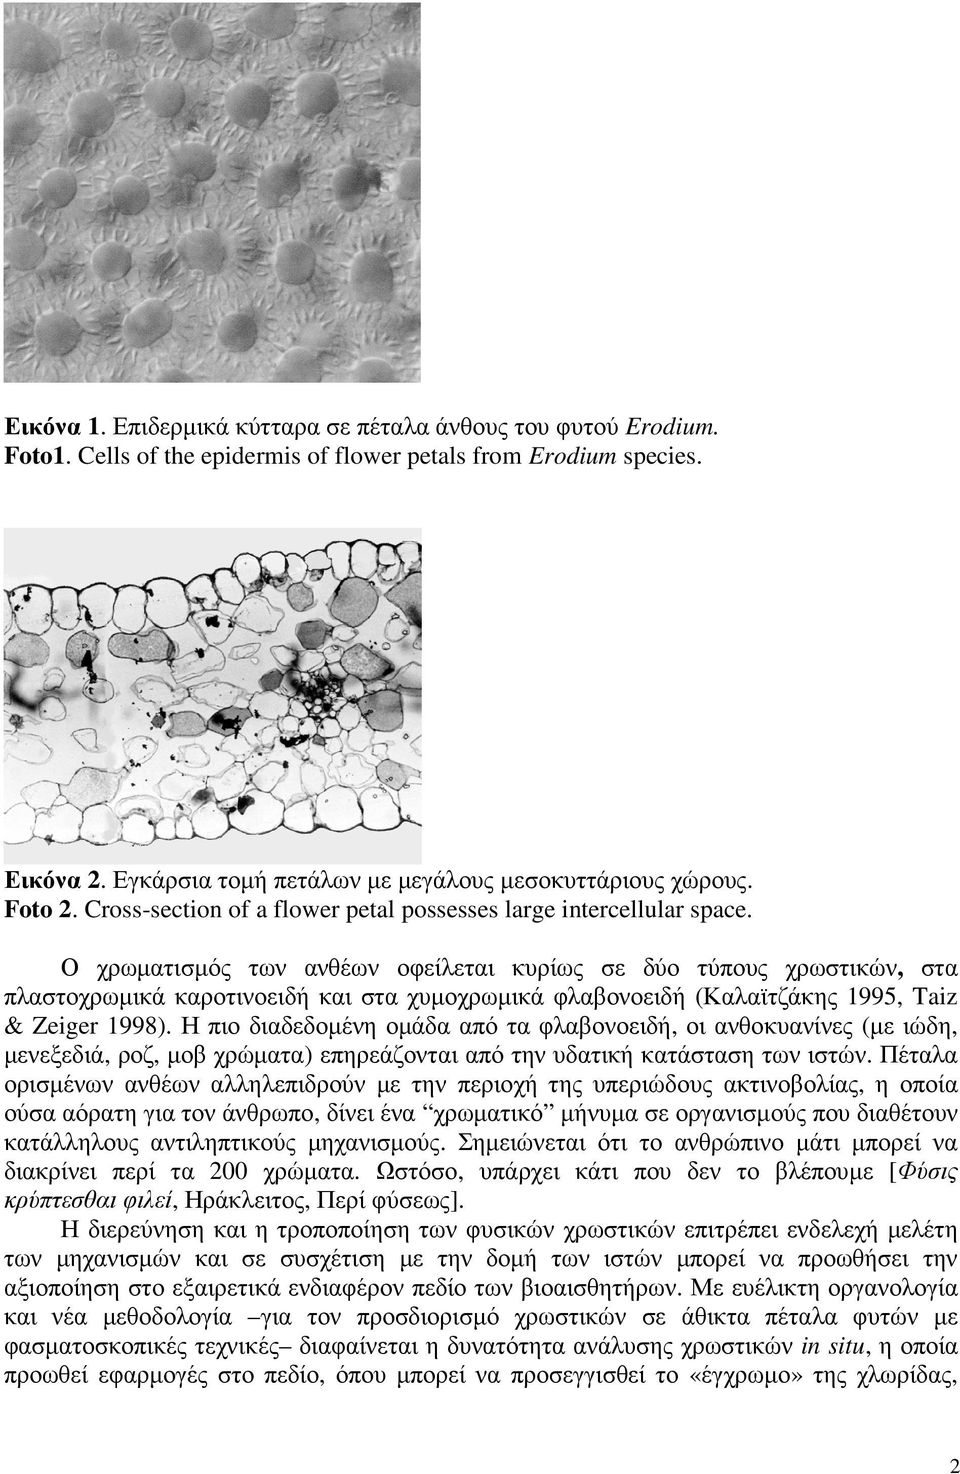 Ο χρωµατισµός των ανθέων οφείλεται κυρίως σε δύο τύπους χρωστικών, στα πλαστοχρωµικά καροτινοειδή και στα χυµοχρωµικά φλαβονοειδή (Καλαϊτζάκης 1995, Taiz & Zeiger 1998).